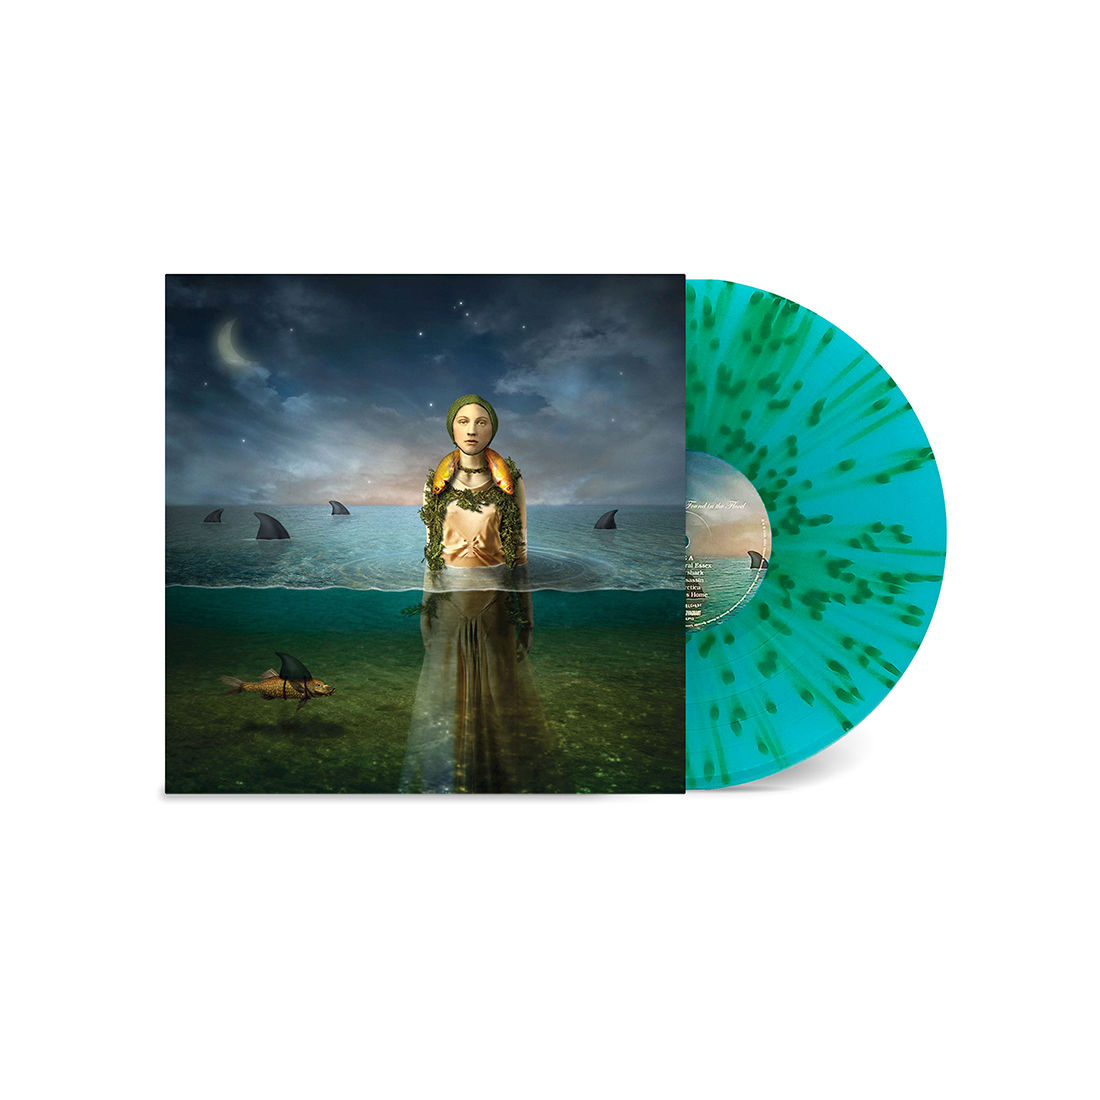 Found In The Flood: Limited Blue + Green Splatter Vinyl LP